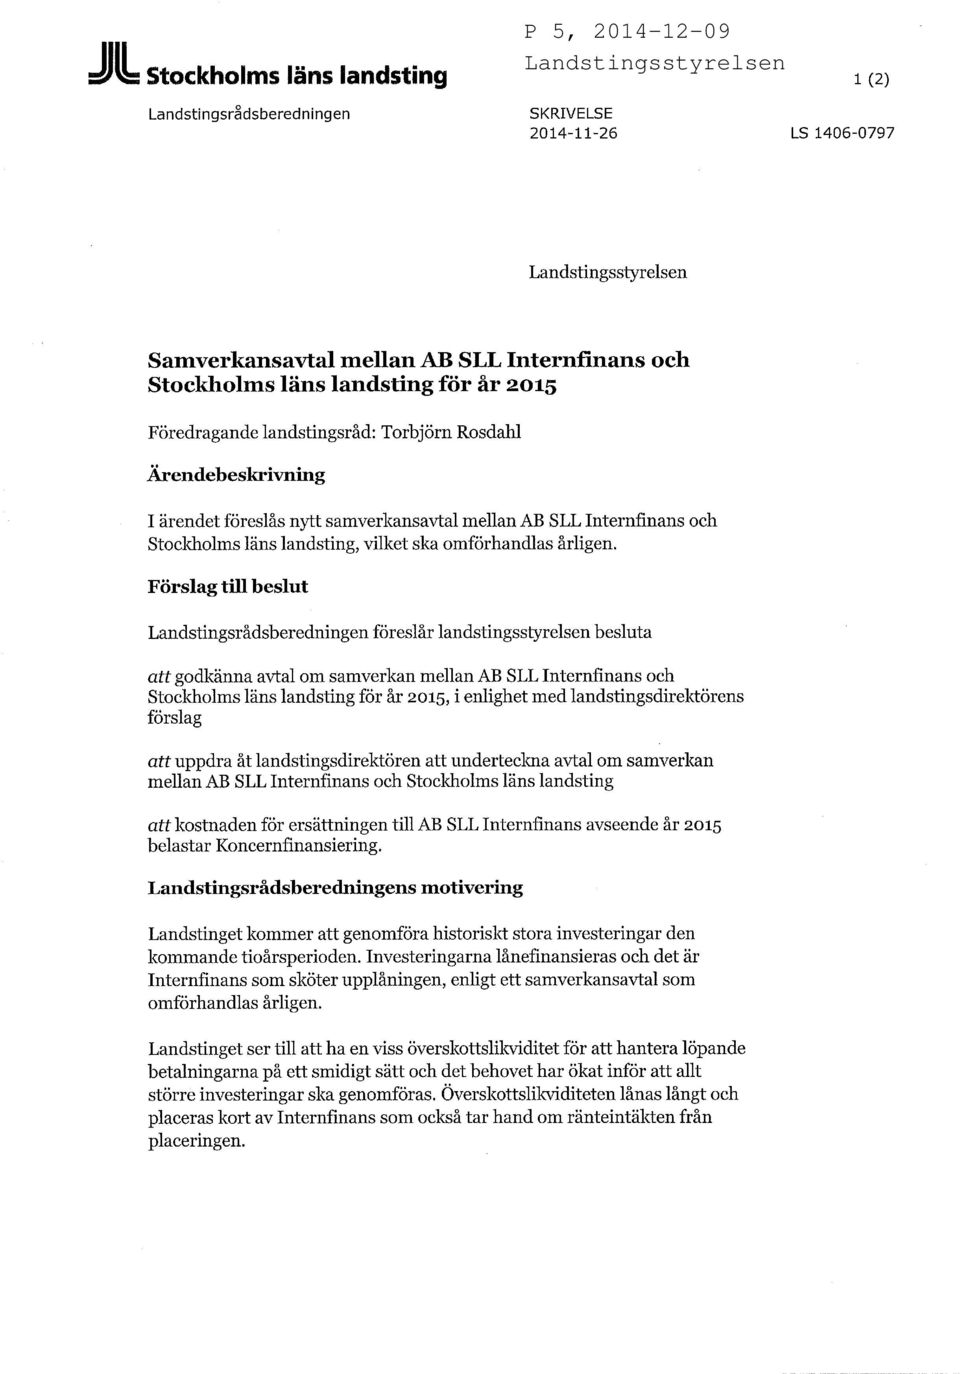 Förslag till beslut Landstingsrådsberedningen föreslår landstingsstyrelsen besluta att godkänna avtal om samverkan mellan AB SLL Internfinans och Stockholms läns landsting för år 2015, i enlighet med